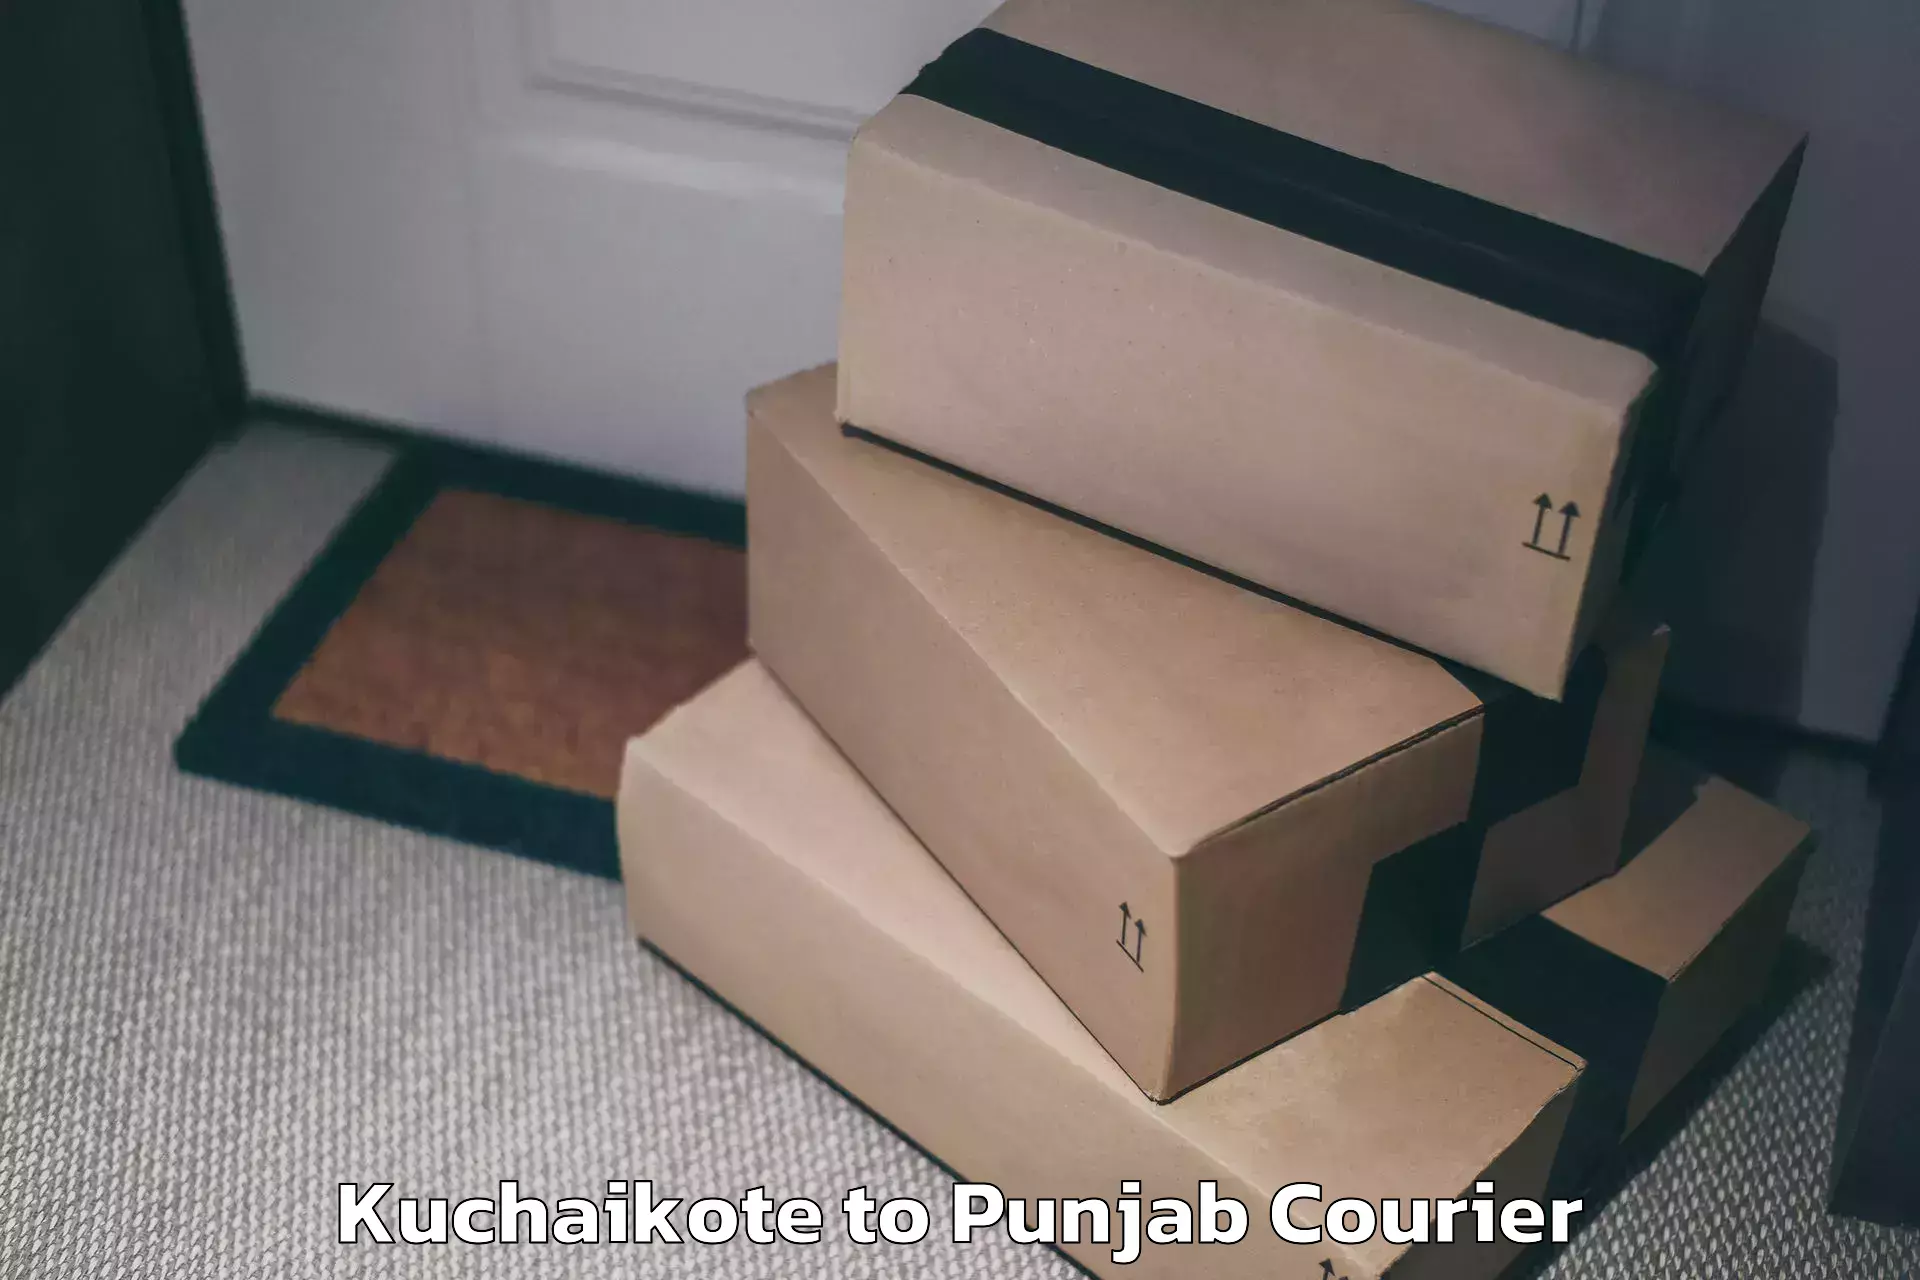 Luggage transfer service Kuchaikote to Central University of Punjab Bathinda